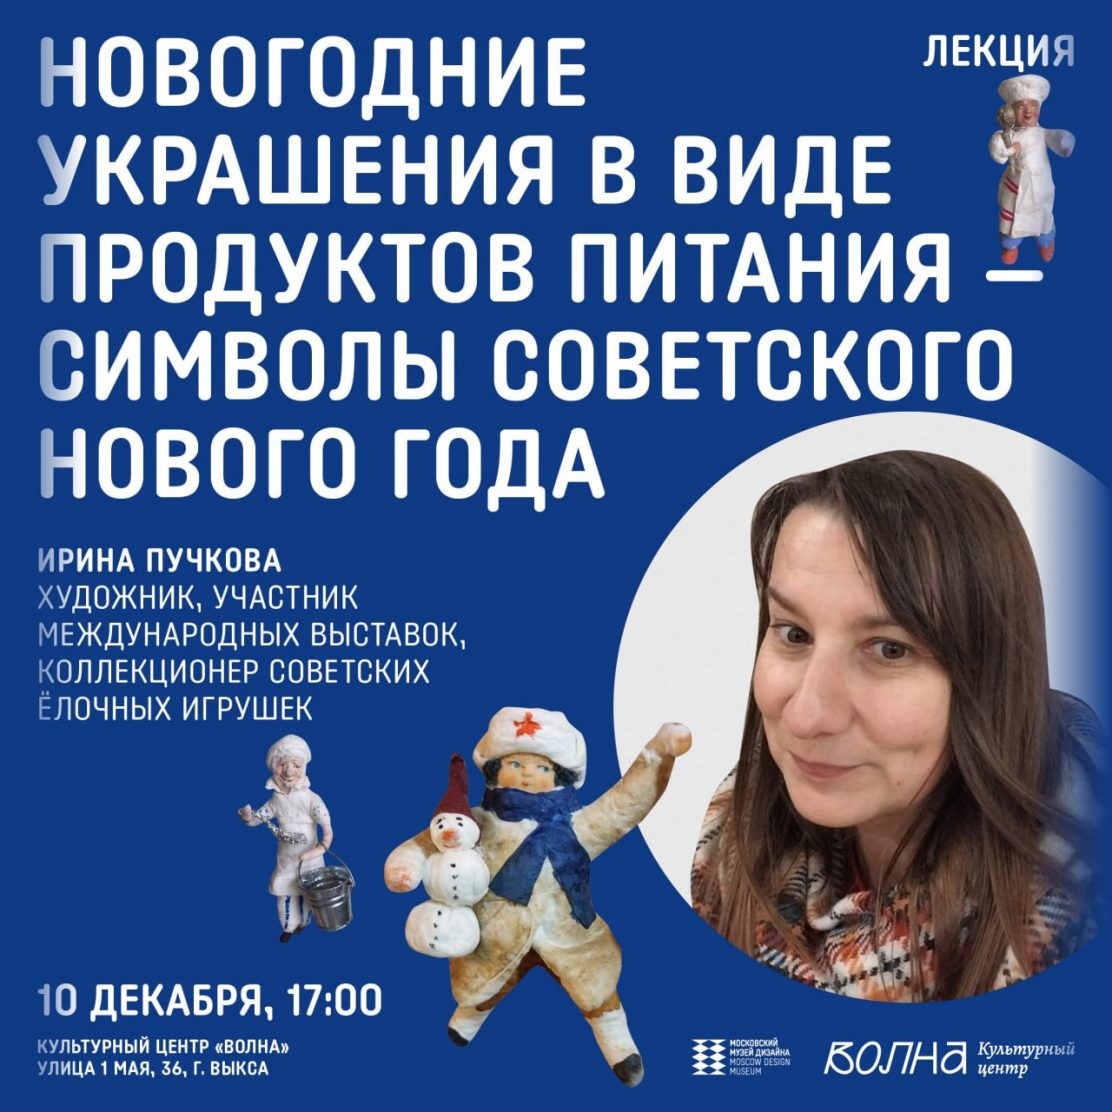 Приглашаем на лекцию о советских новогодних игрушках в культурный центр «Волна»